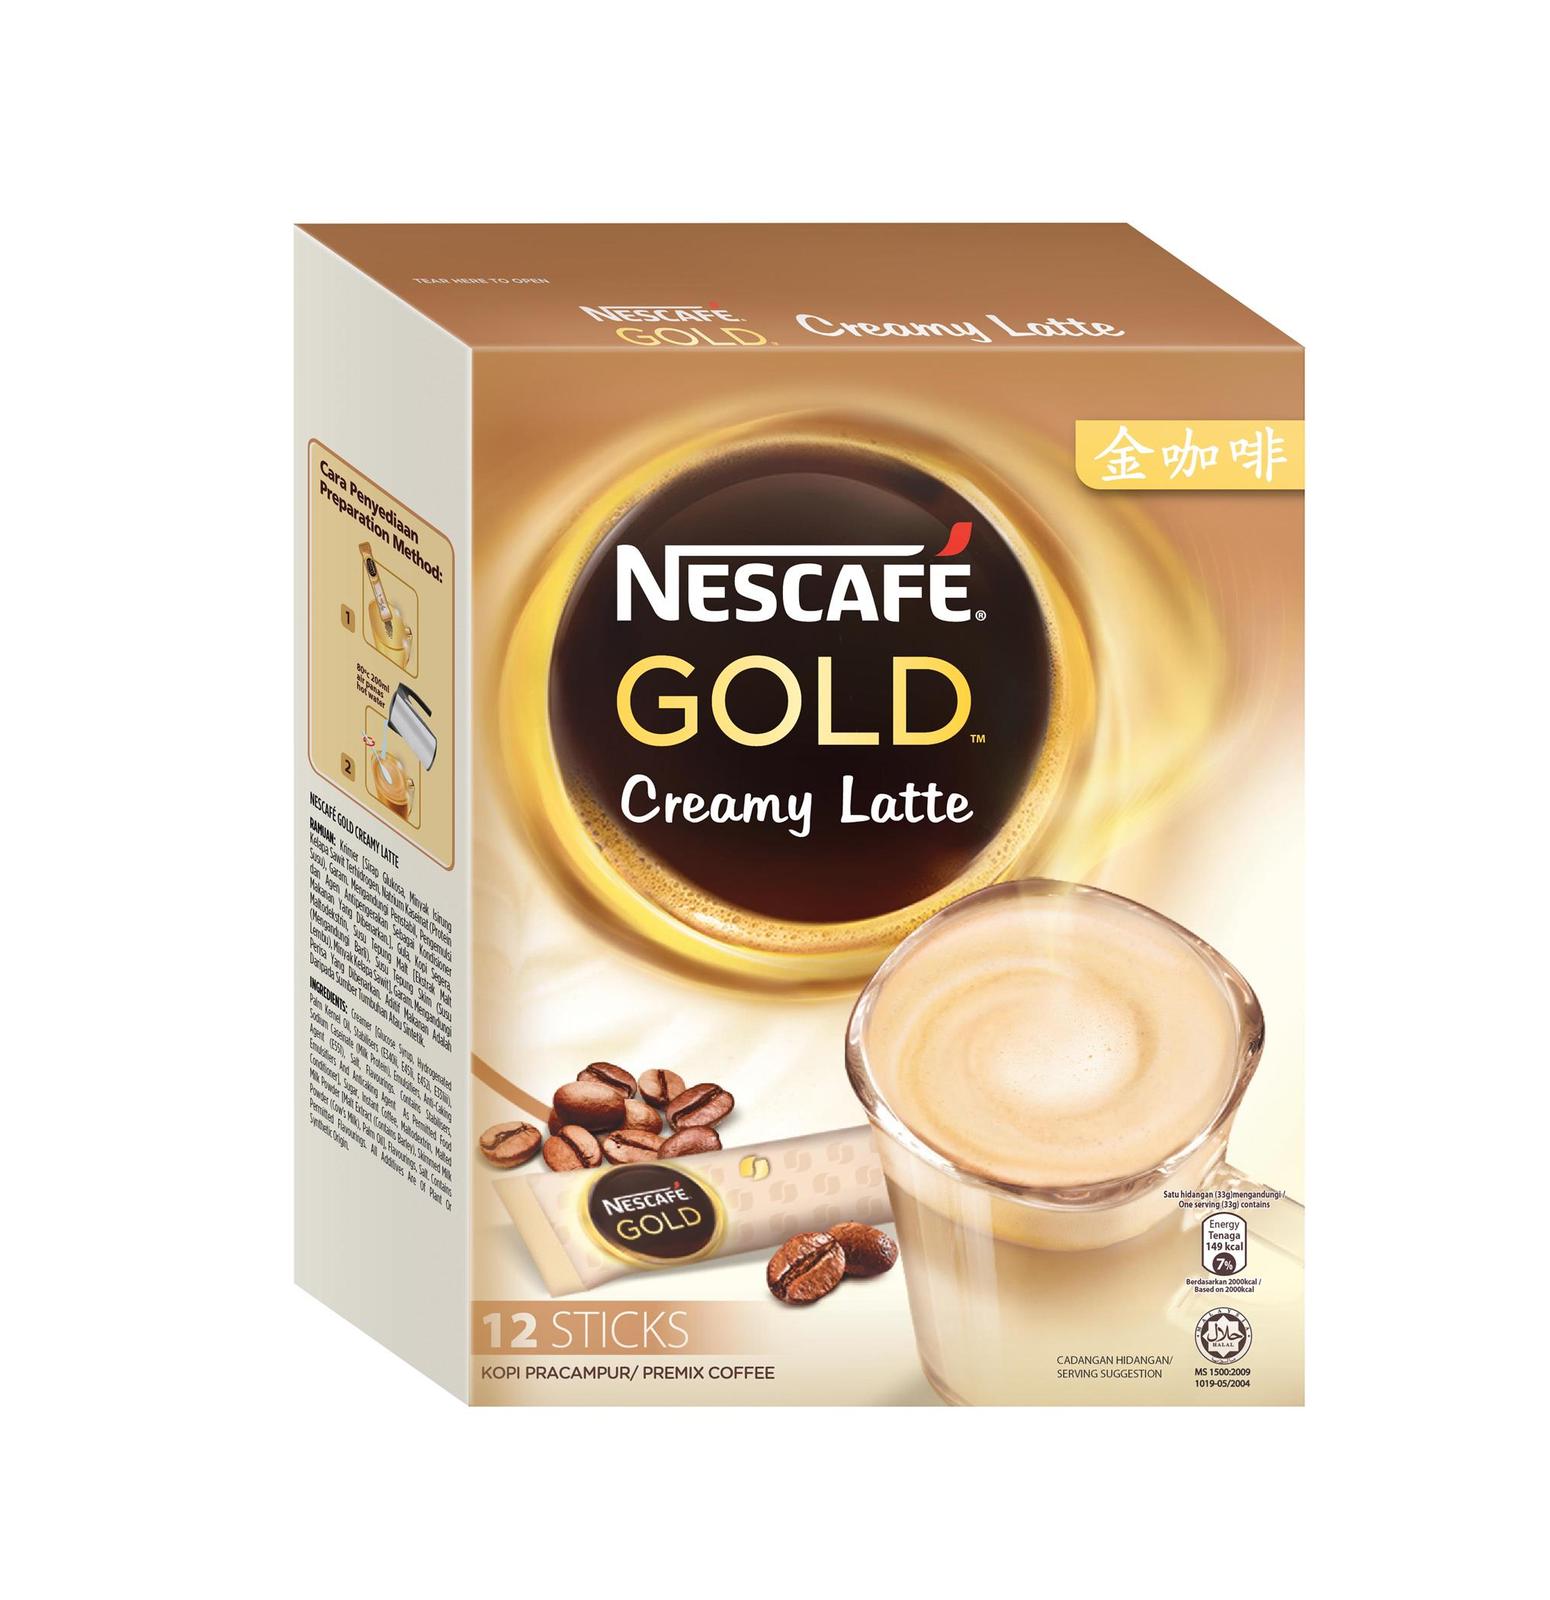 Nescafe gold barista style. Кофе Нескафе Голд латте стайл. Нескафе Голд Barista Latte Style. Кофе латте Nescafe Gold. Nescafe Barista Latte Style.